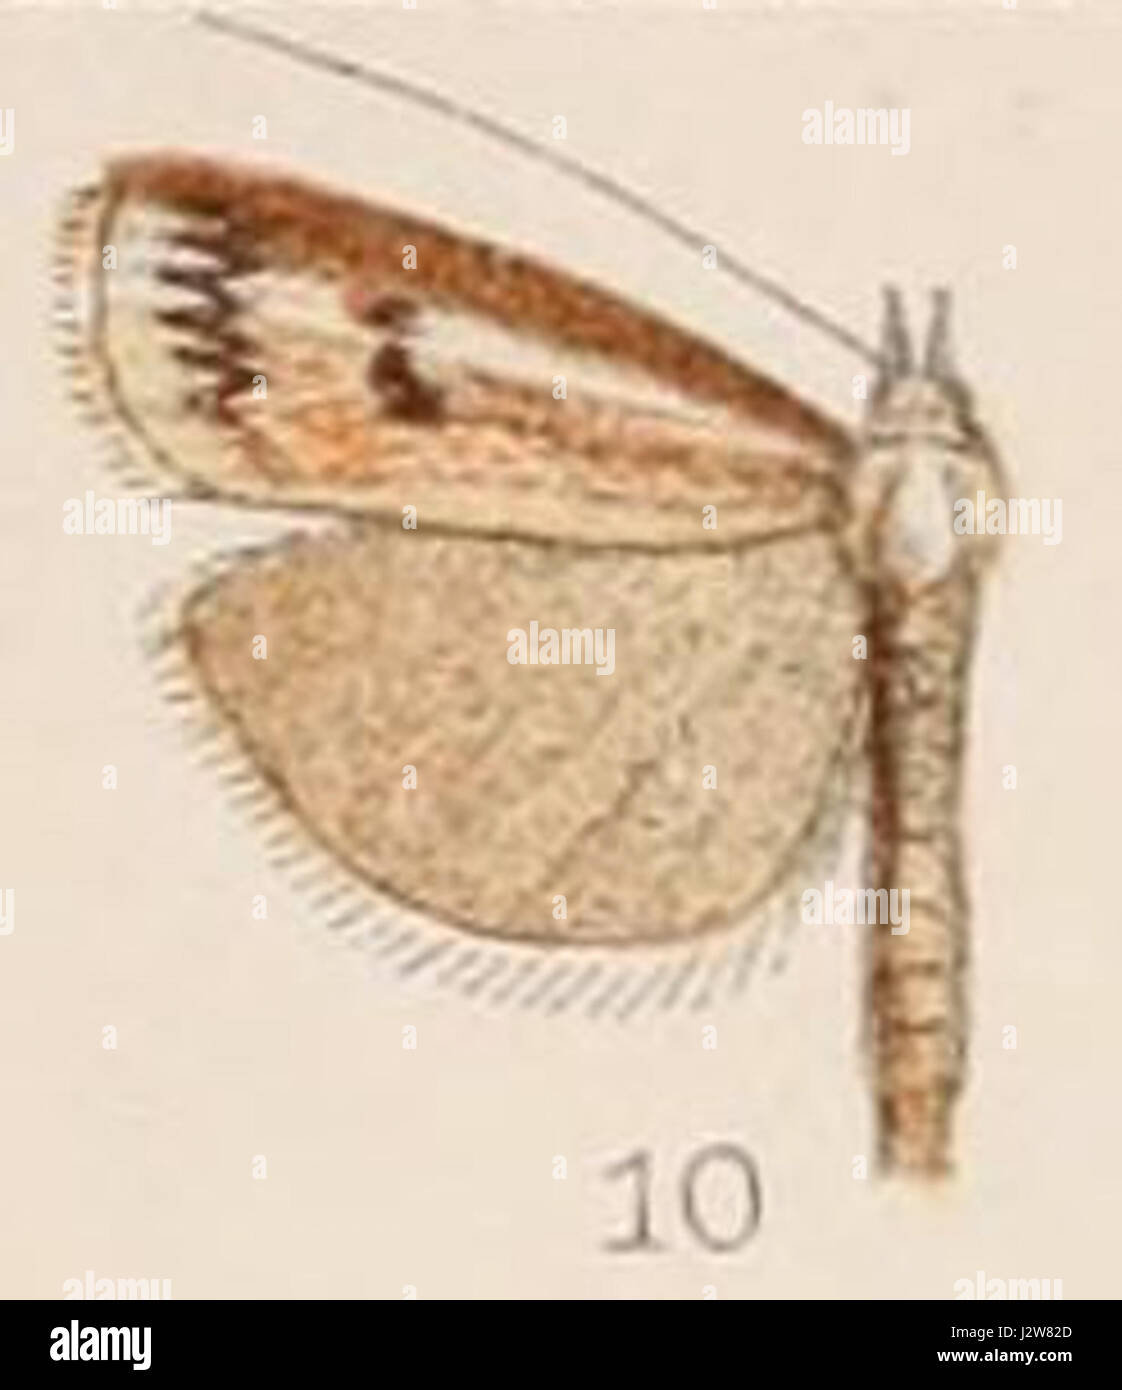 10-Crambus dianiphalis Hampson 1908 Stock Photo